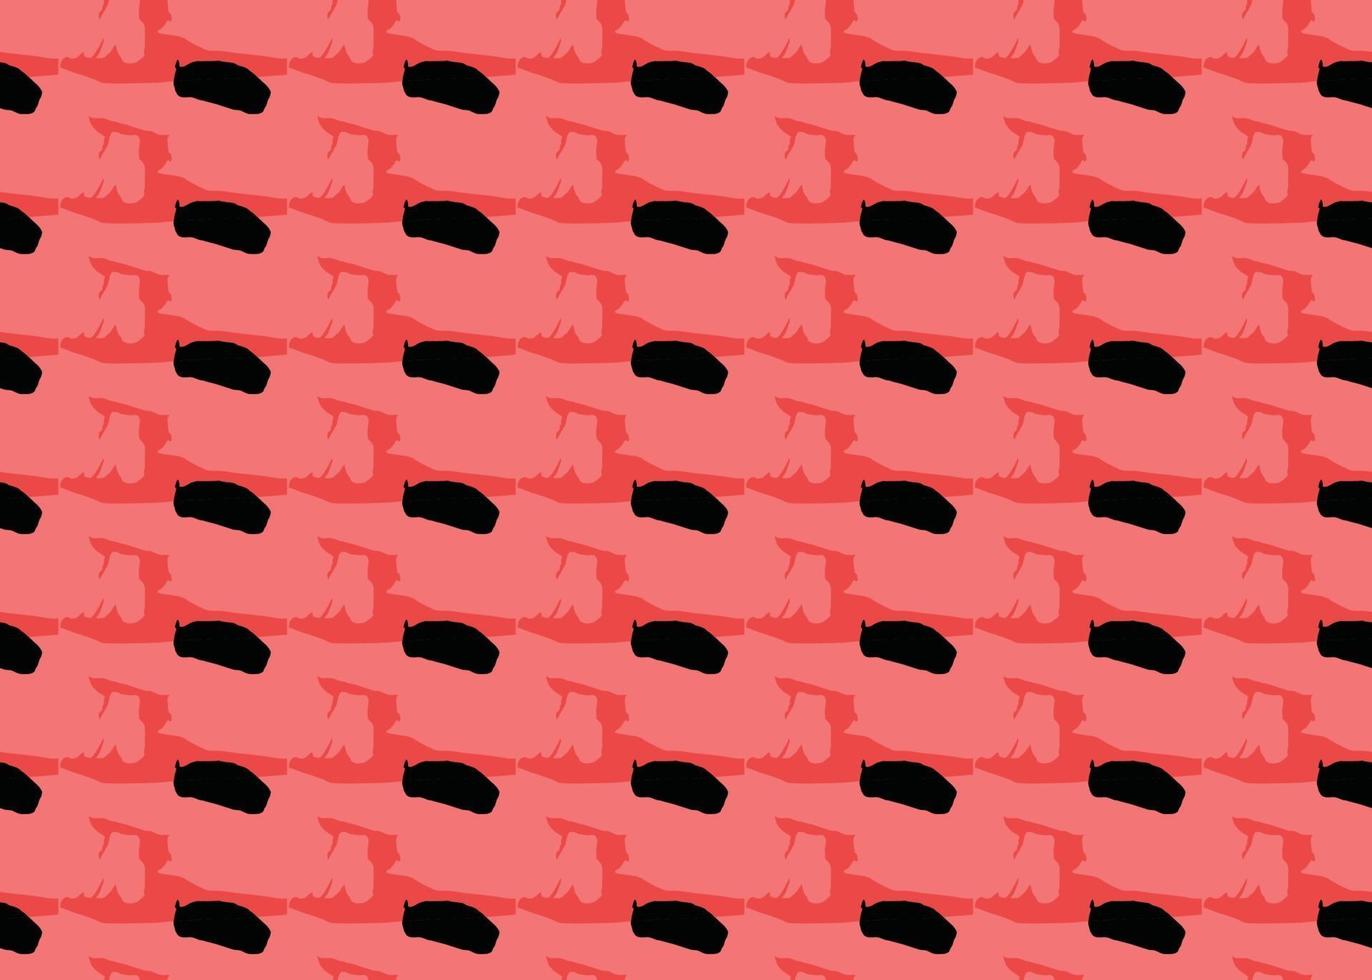 Vektor Textur Hintergrund, nahtloses Muster. handgezeichnete, rote, schwarze Farben.